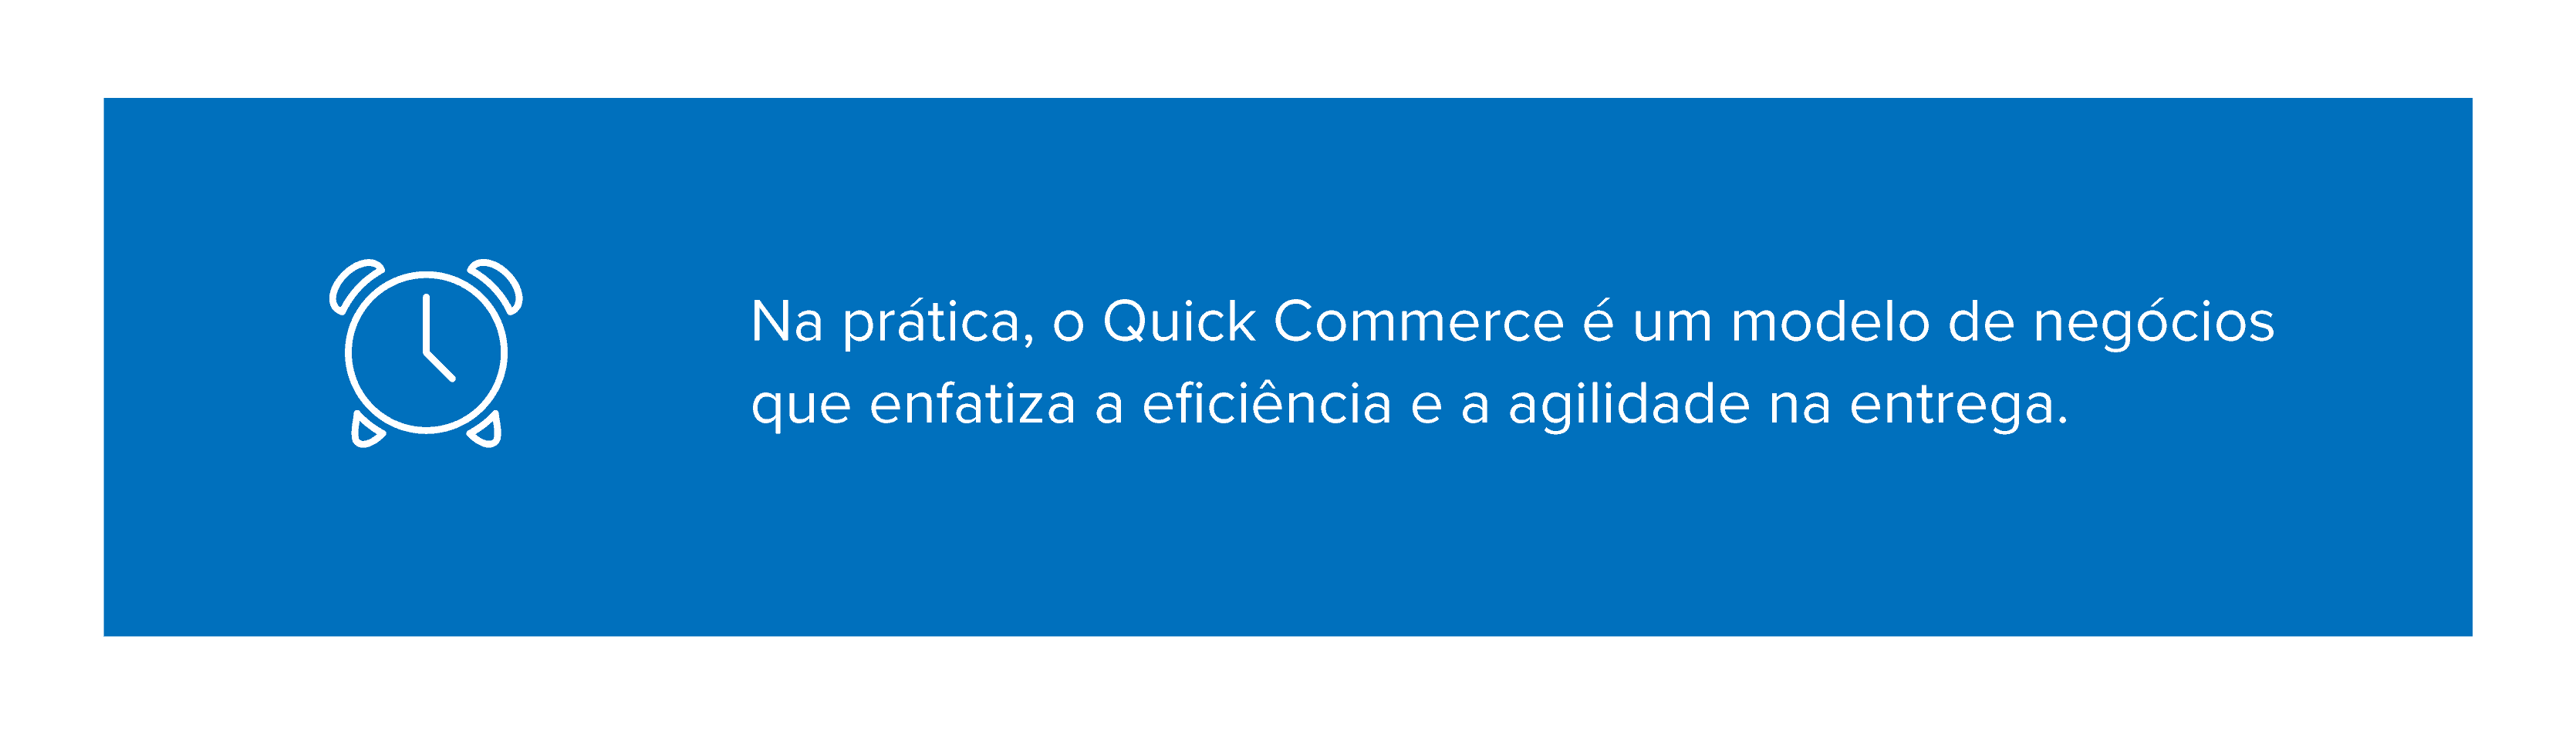 Na prática, o Quick Commerce é um modelo de negócios que enfatiza a eficiência e a agilidade na entrega.